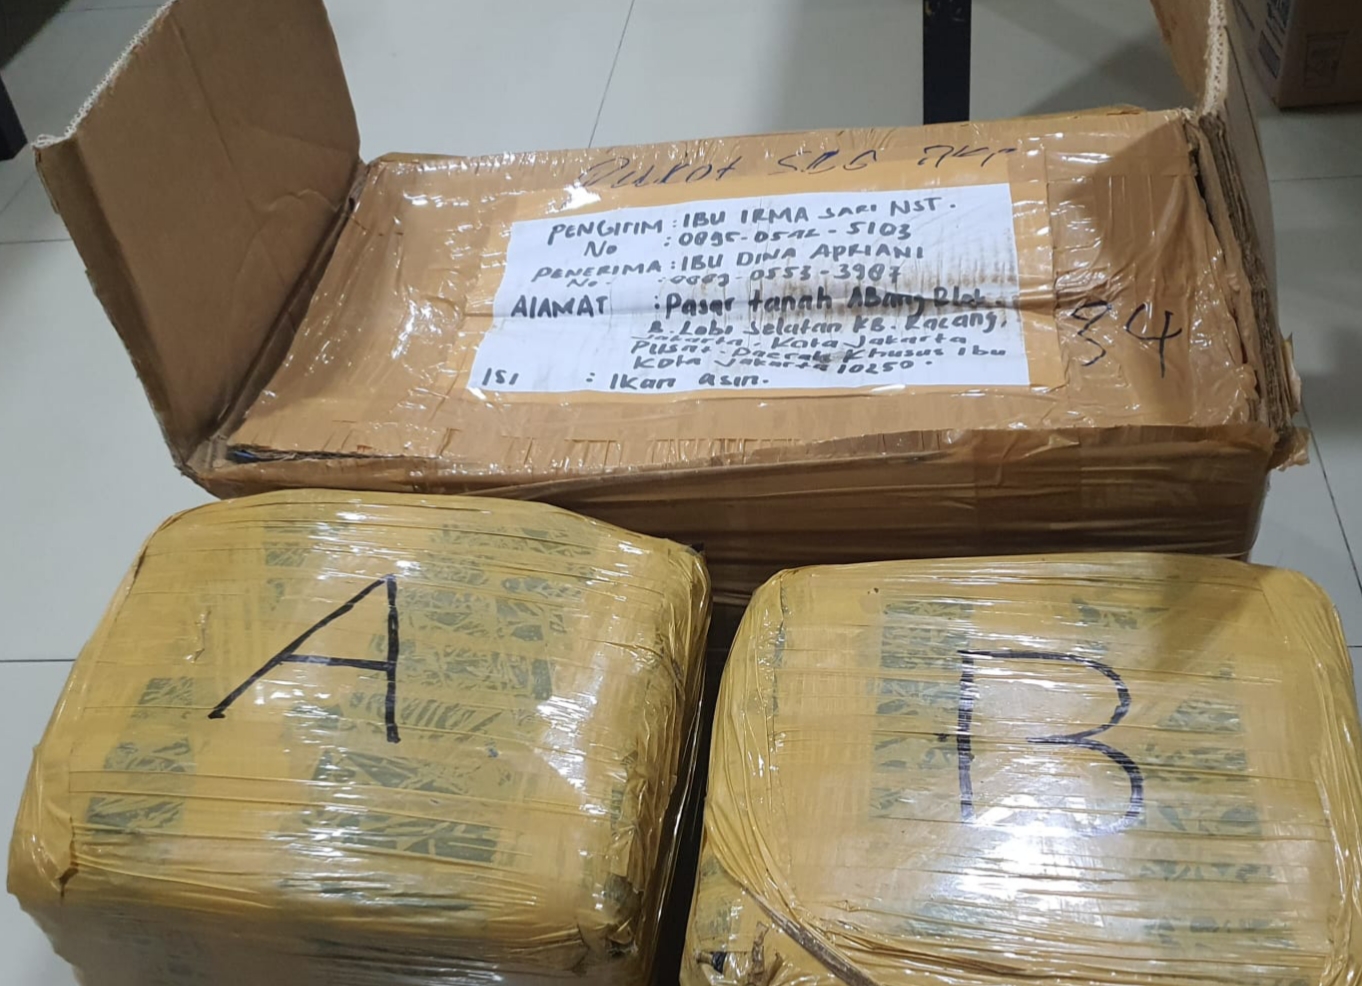 Polisi Ungkap Peredaran Narkoba di Tanah Abang, 12 Kilogram Ganja Diamankan